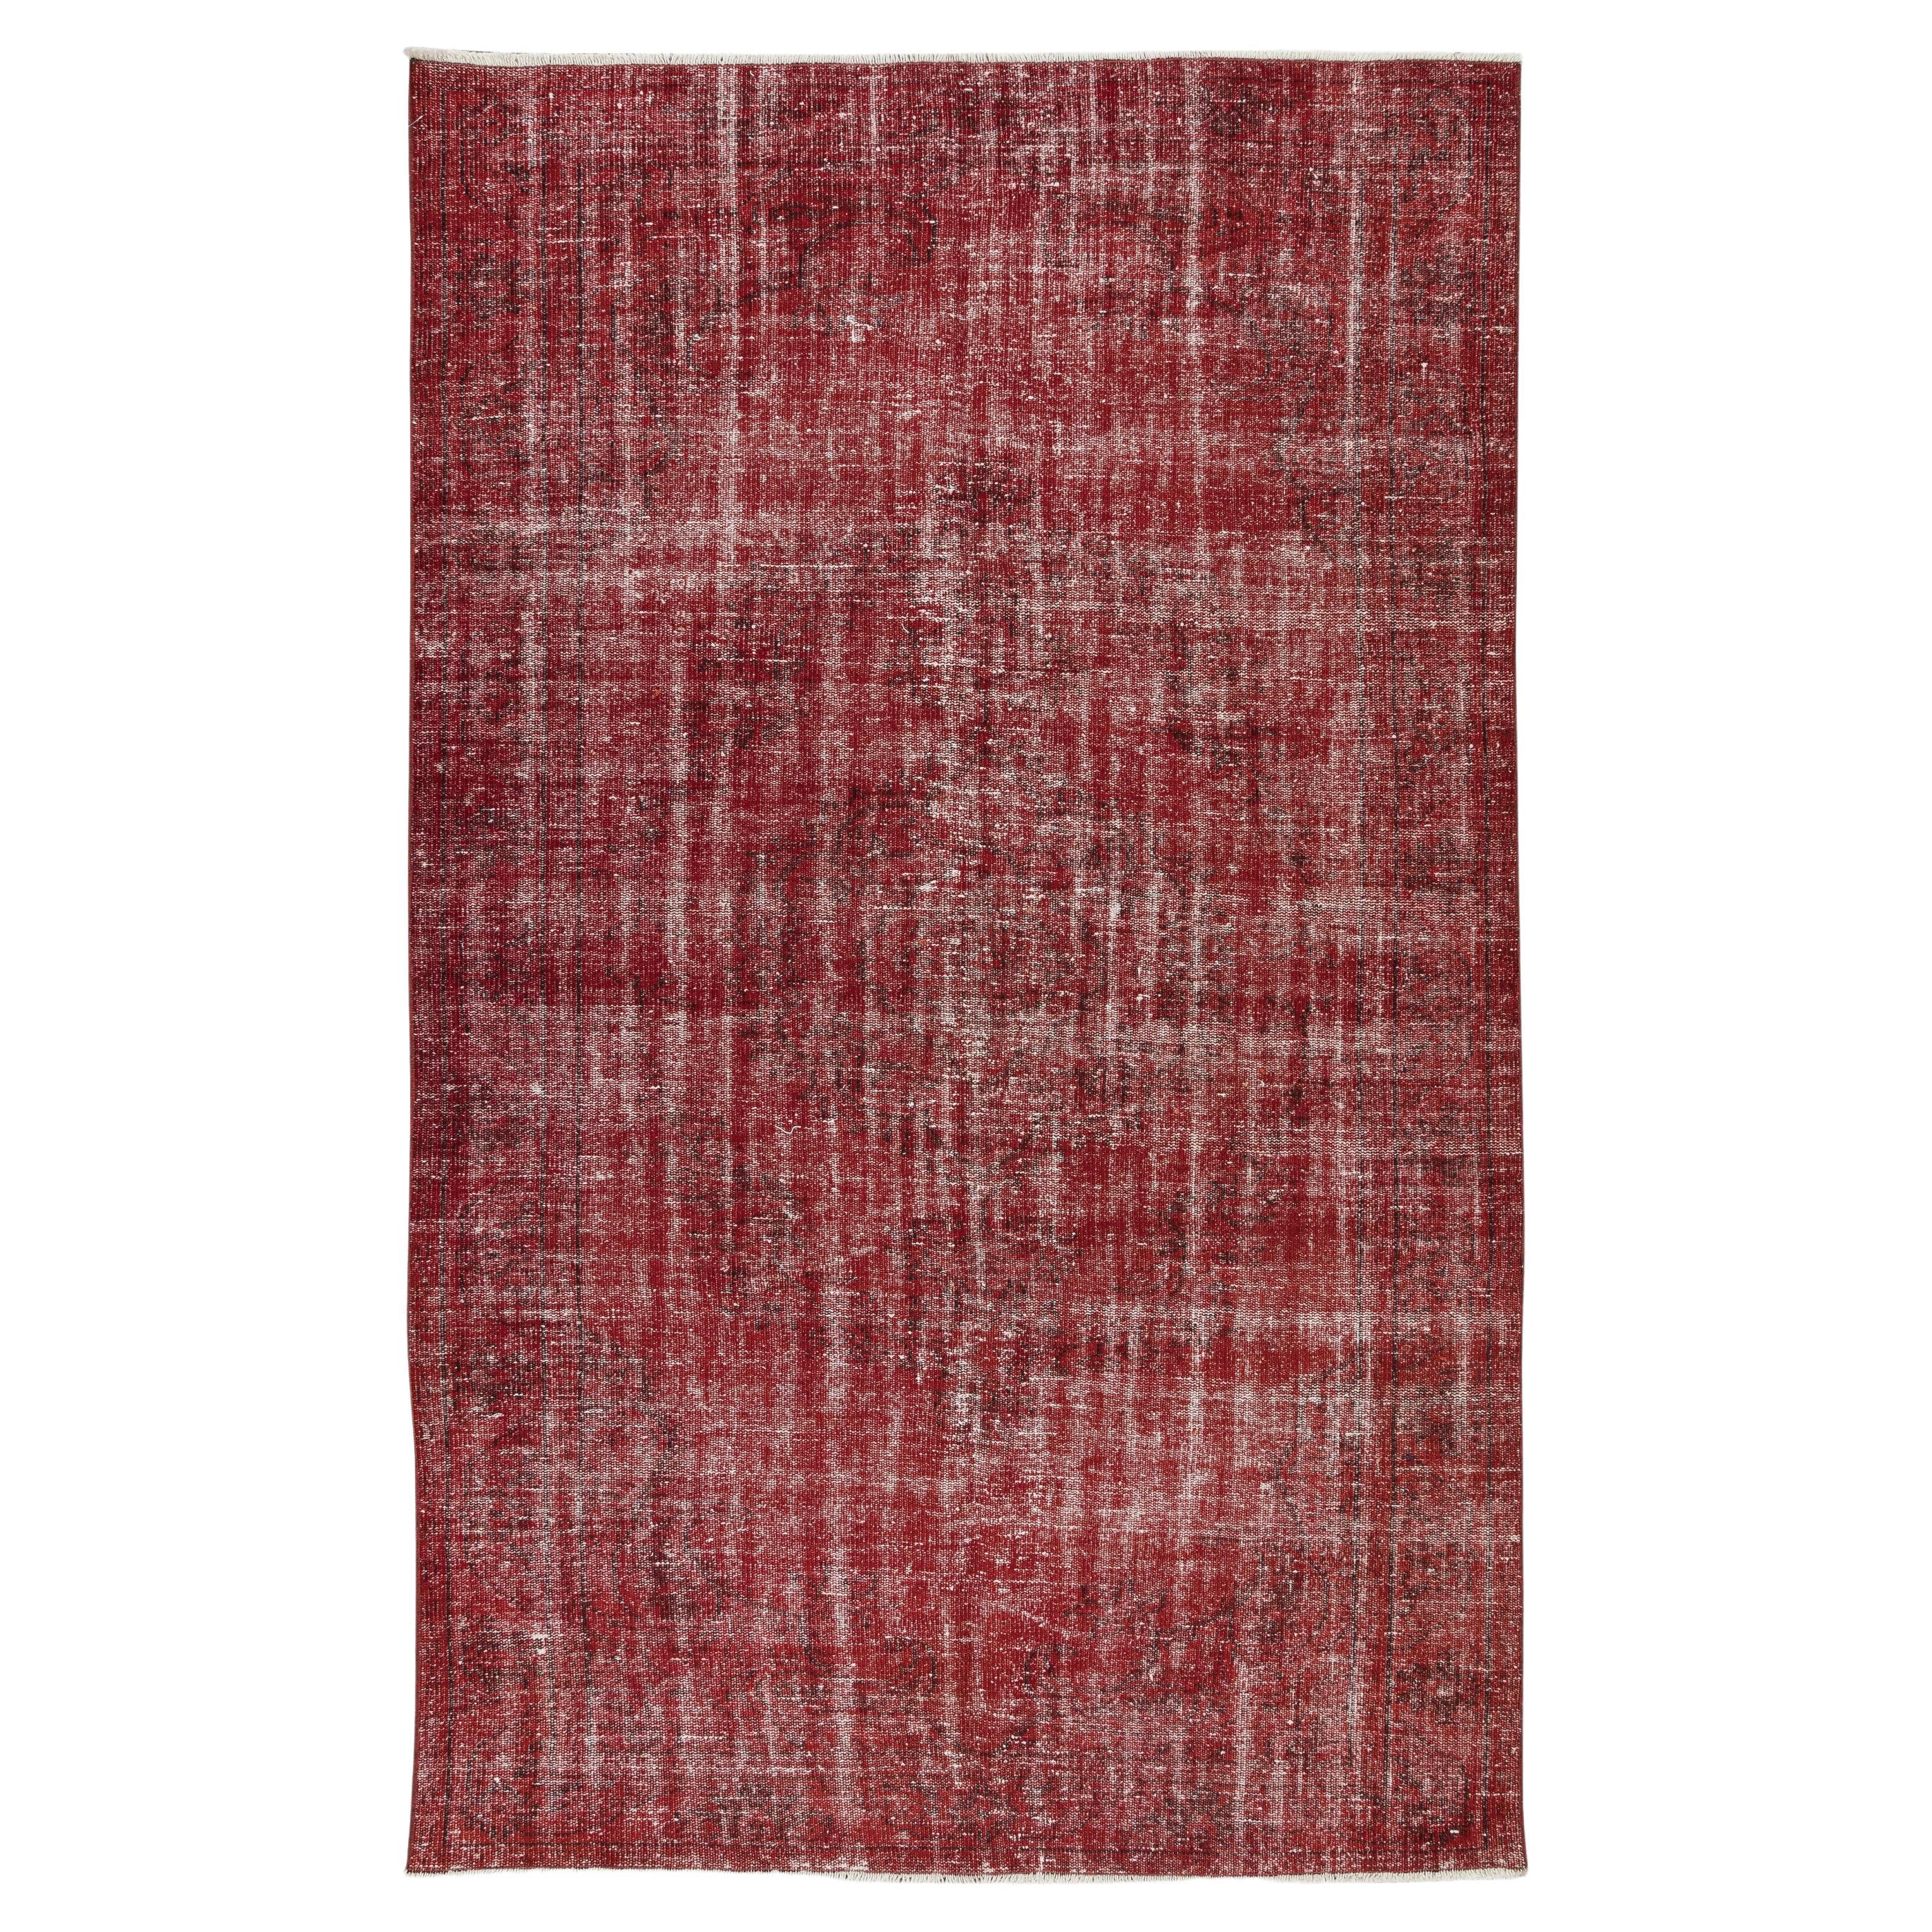 Handgefertigter türkischer Over-Dyed-Teppich im Vintage-Stil in Rot, großartig für Büro und Zuhause